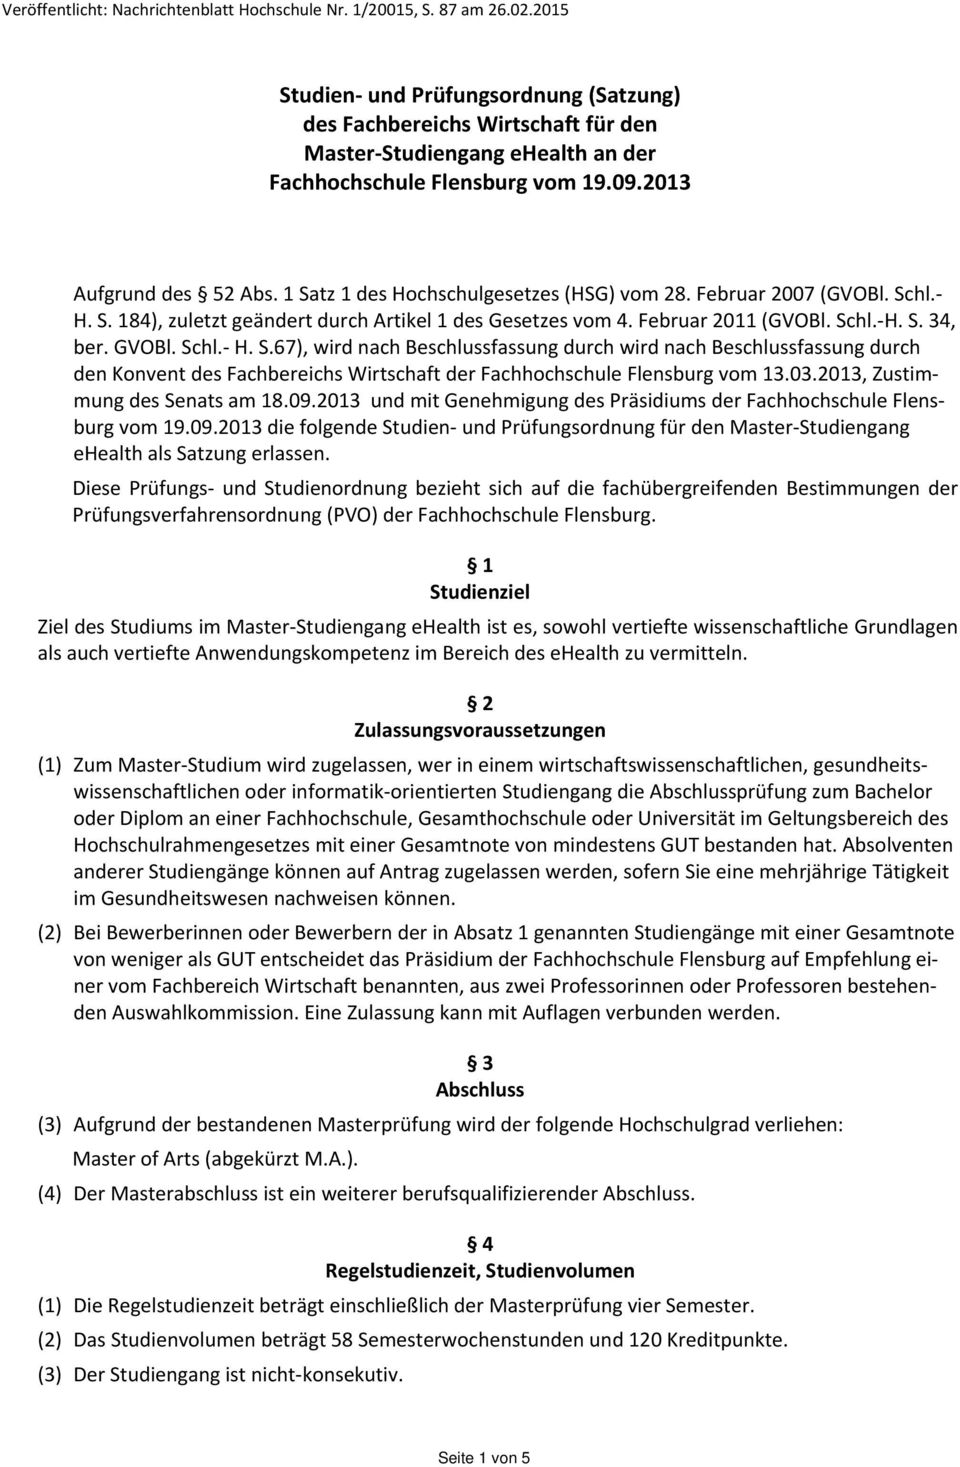 1 Satz 1 des Hochschulgesetzes (HSG) vom 28. Februar 2007 (GVOBl. Schl. H. S. 184), zuletzt geändert durch Artikel 1 des Gesetzes vom 4. Februar 2011 (GVOBl. Schl. H. S. 34, ber. GVOBl. Schl. H. S.67), wird nach Beschlussfassung durch wird nach Beschlussfassung durch den Konvent des Fachbereichs Wirtschaft der Fachhochschule Flensburg vom 13.